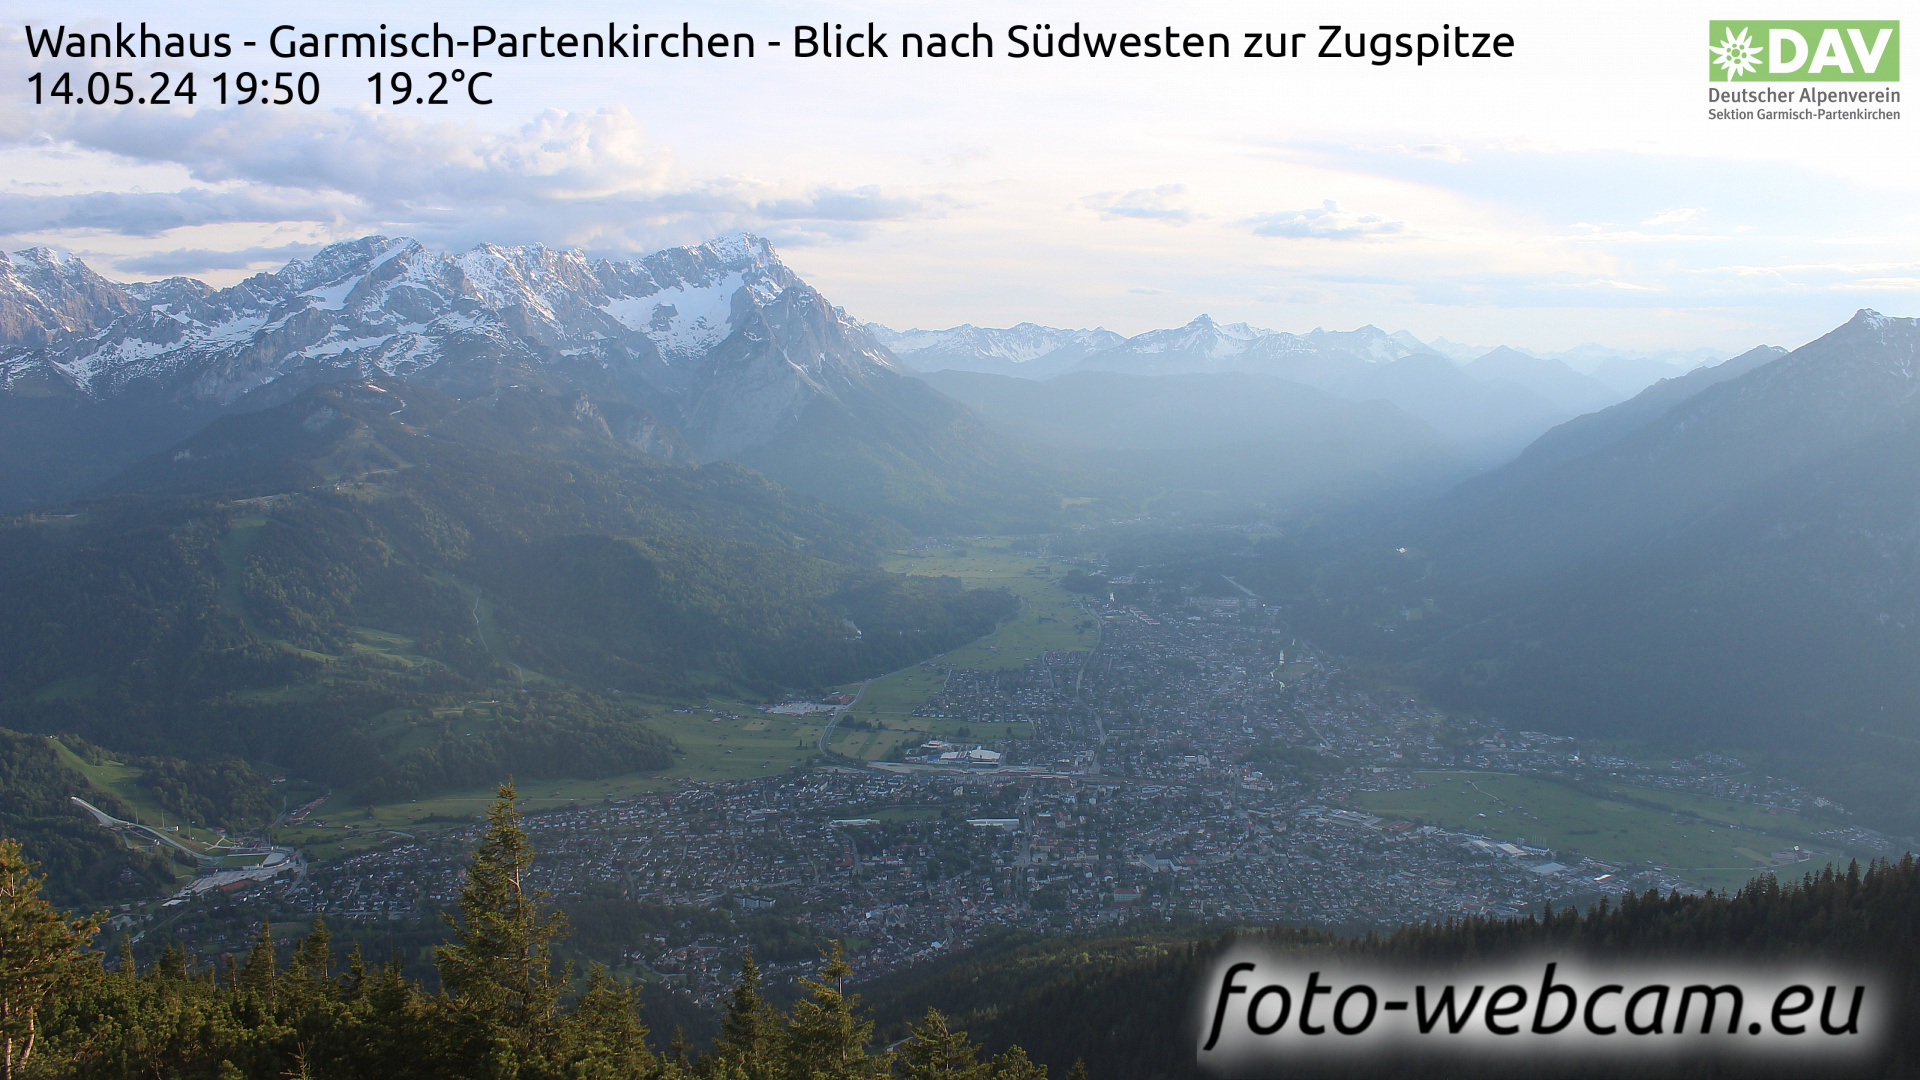 Garmisch-Partenkirchen Wed. 19:51